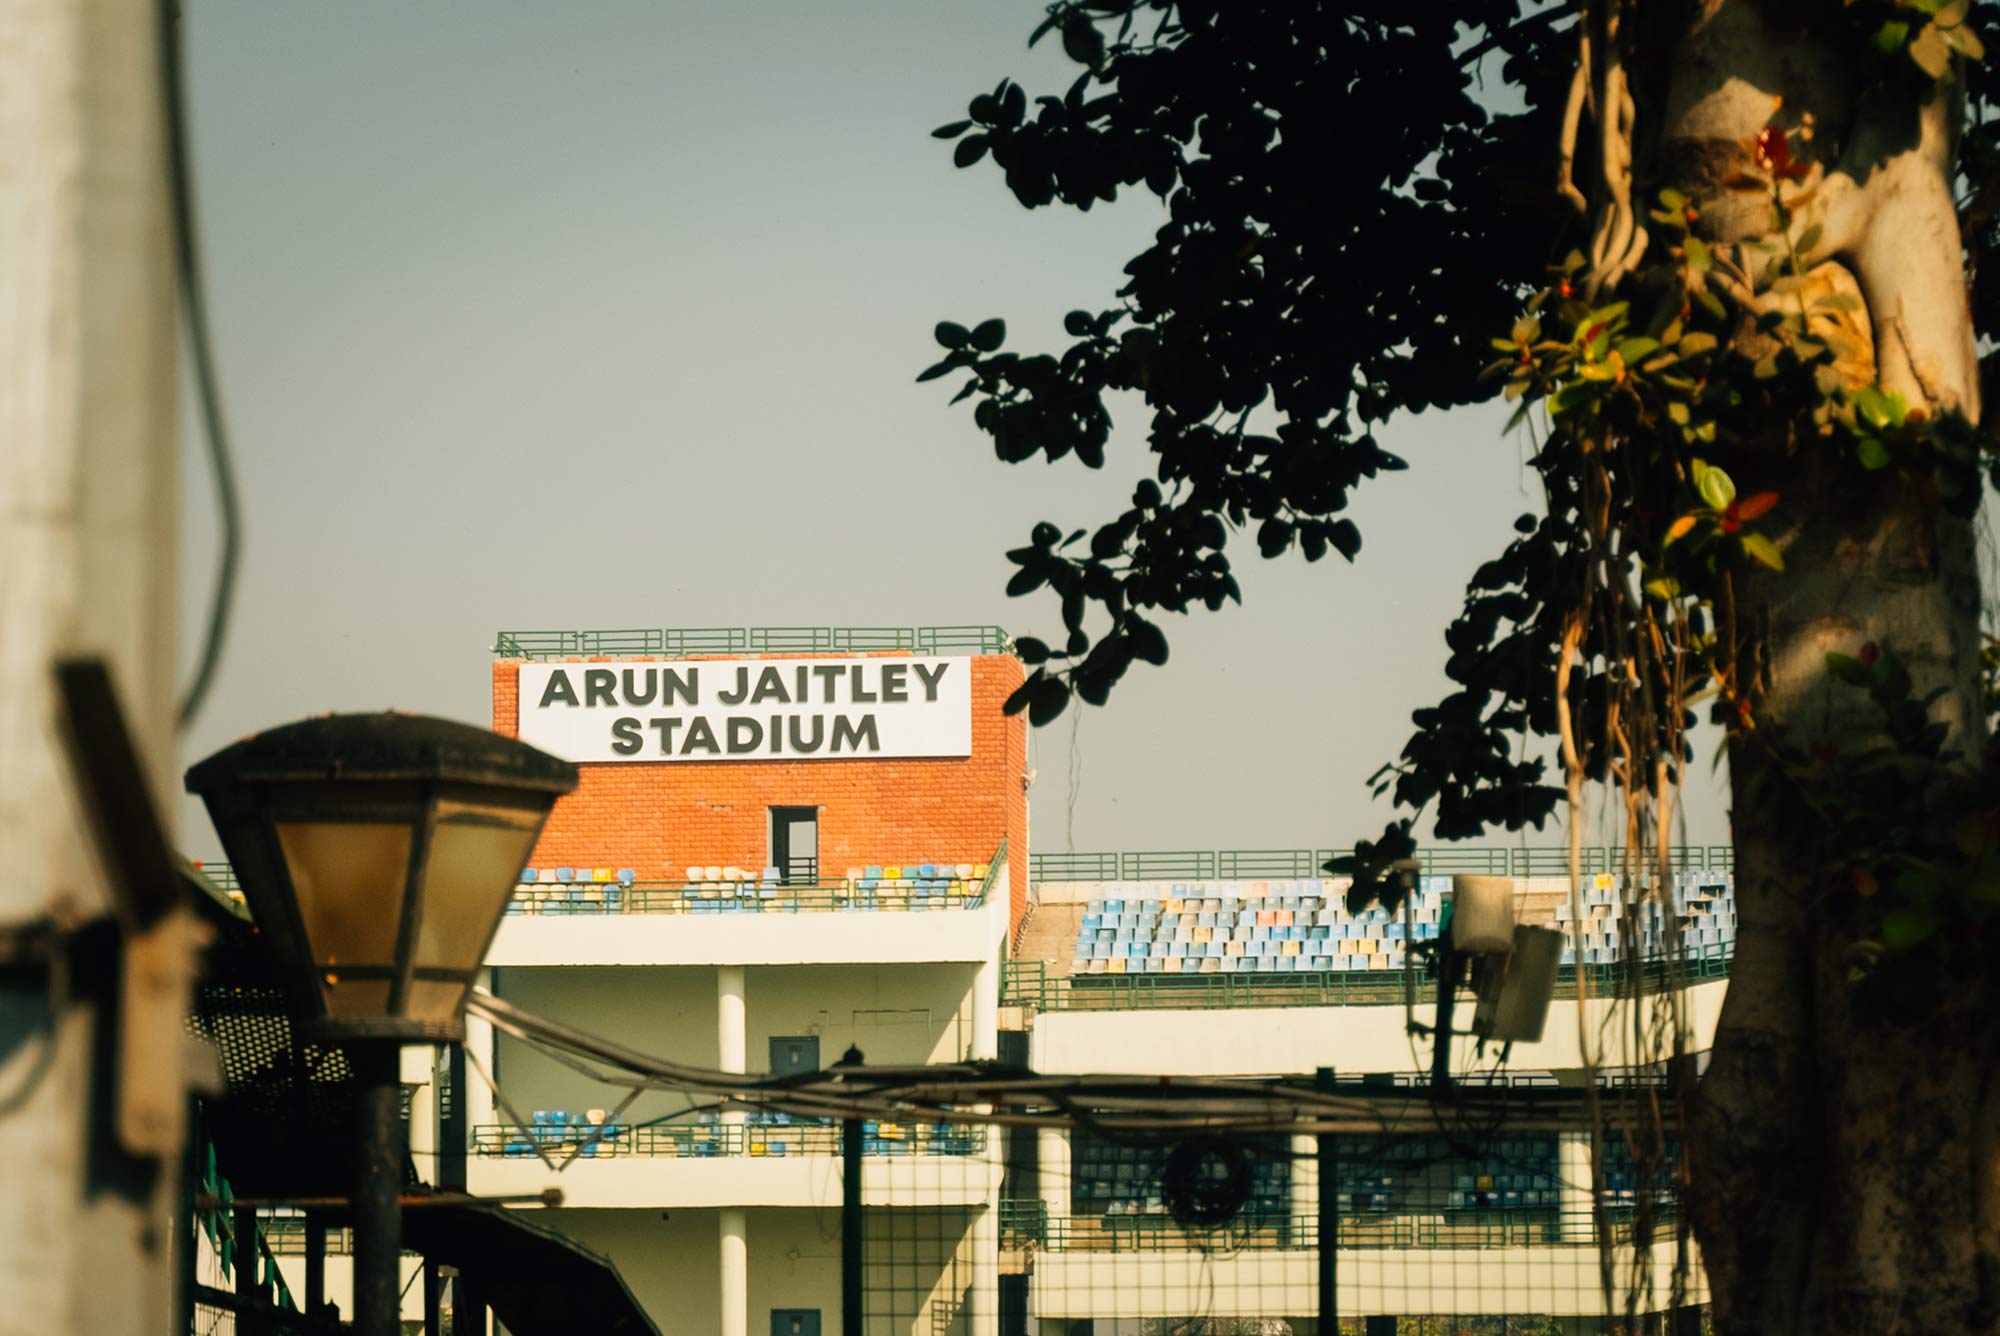 Arun Jaitley Stadium